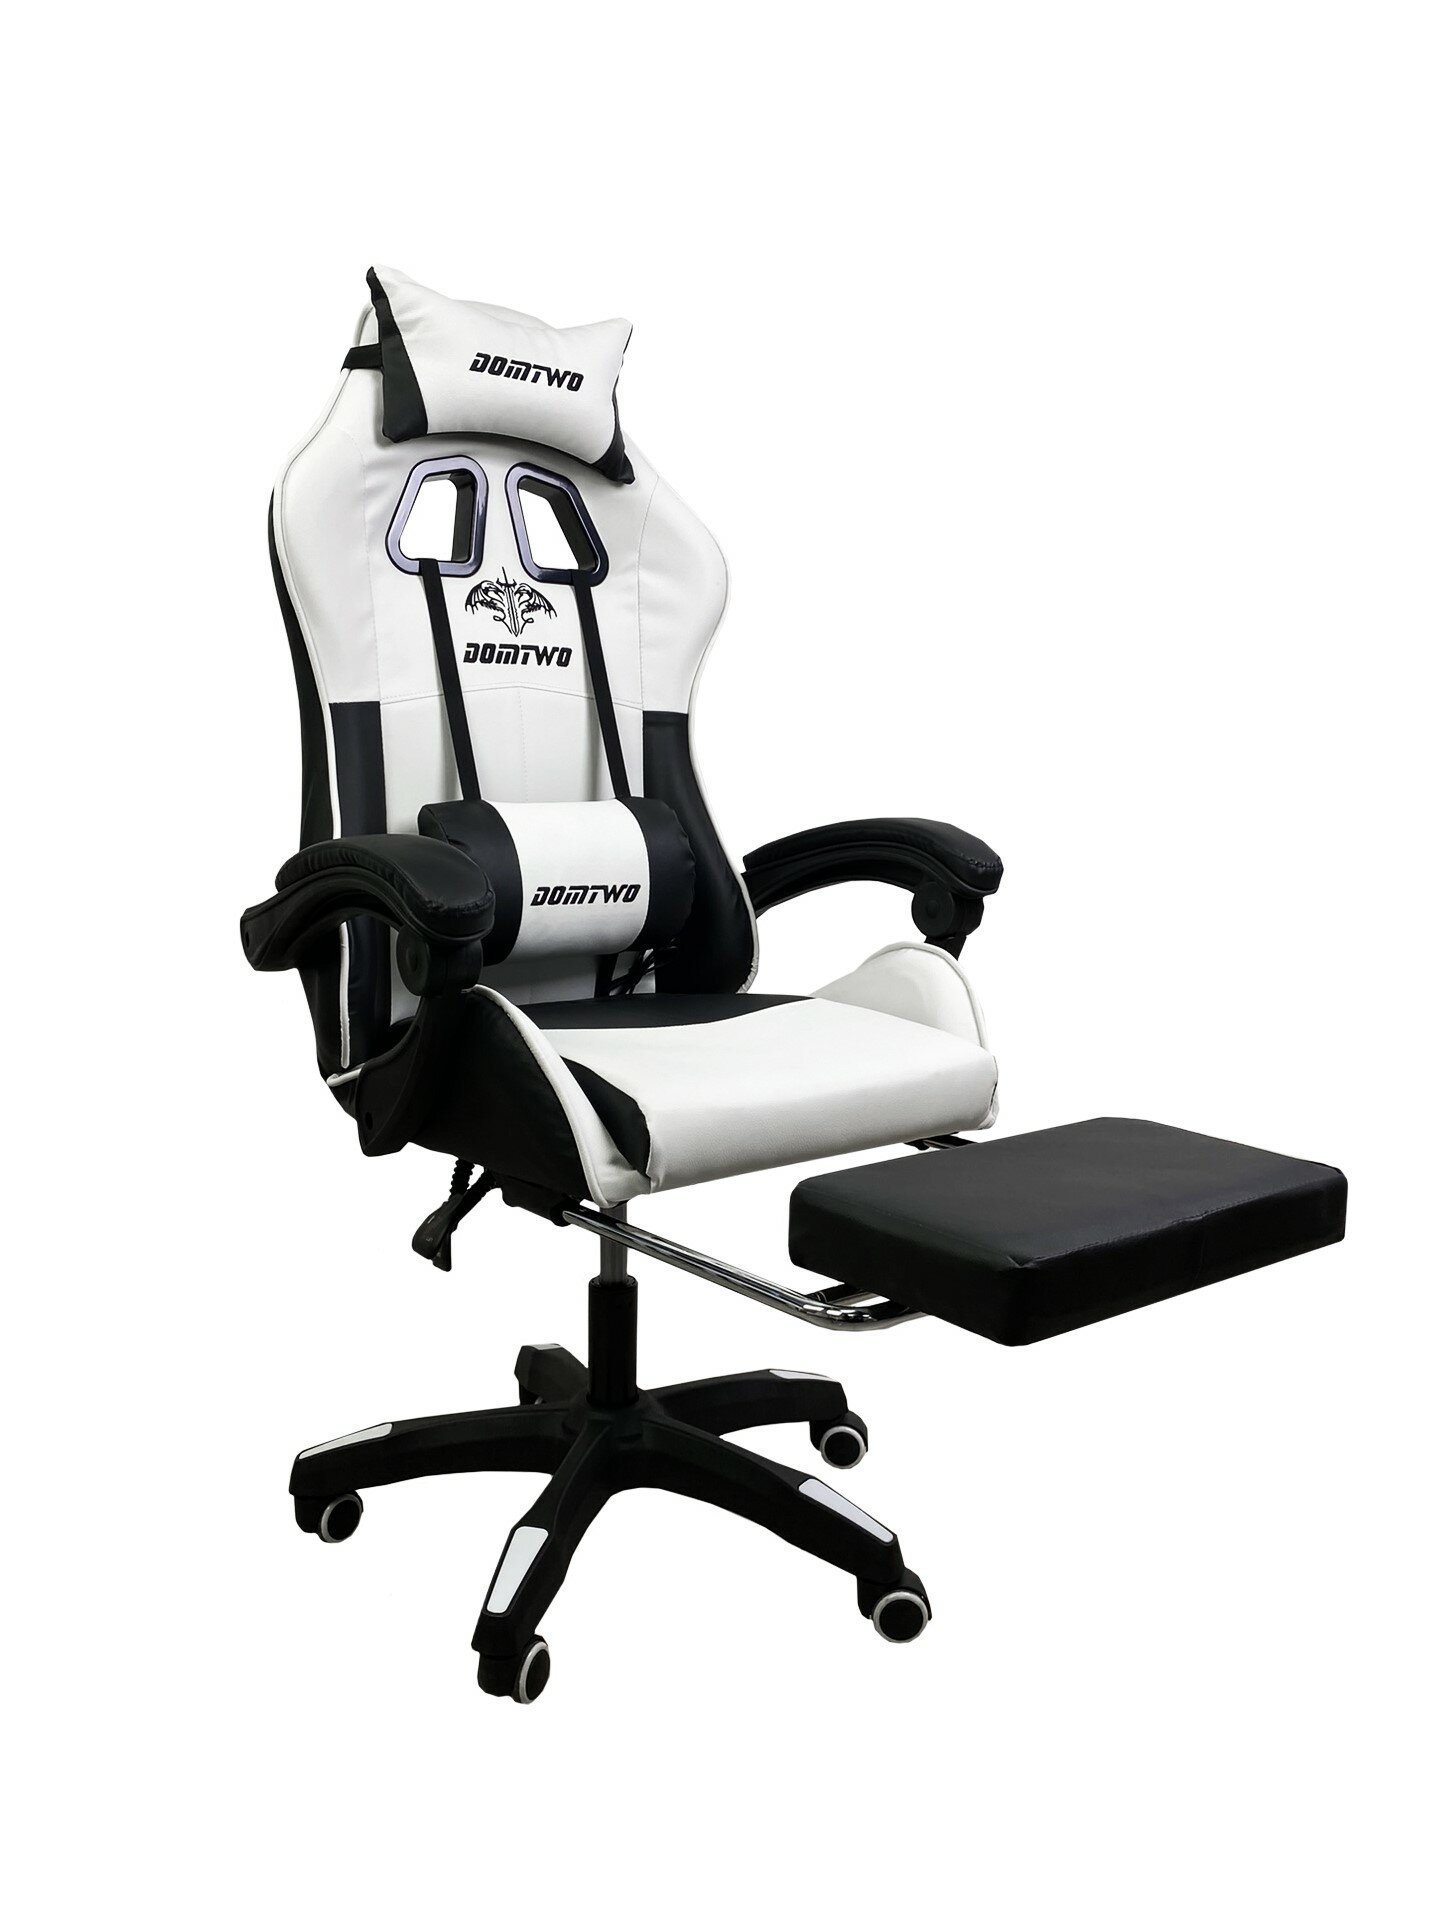 Компьютерное кресло Like Regal 206 игровое, обивка: искусственная кожа, цвет: черный/белый